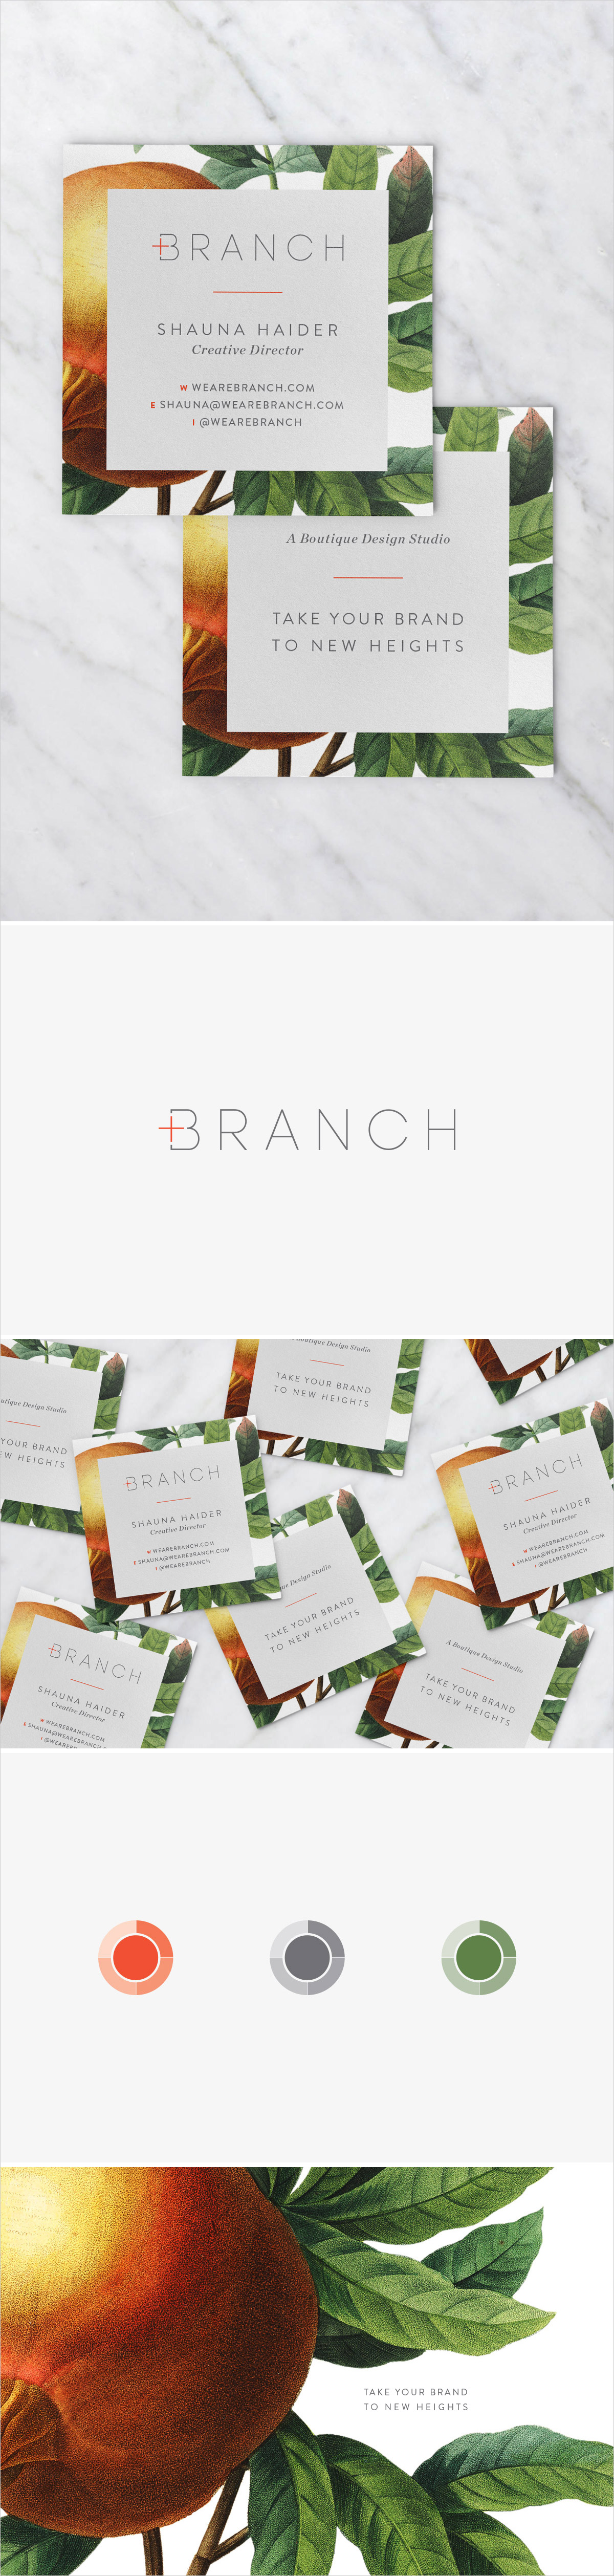 Branch | Brand Refresh